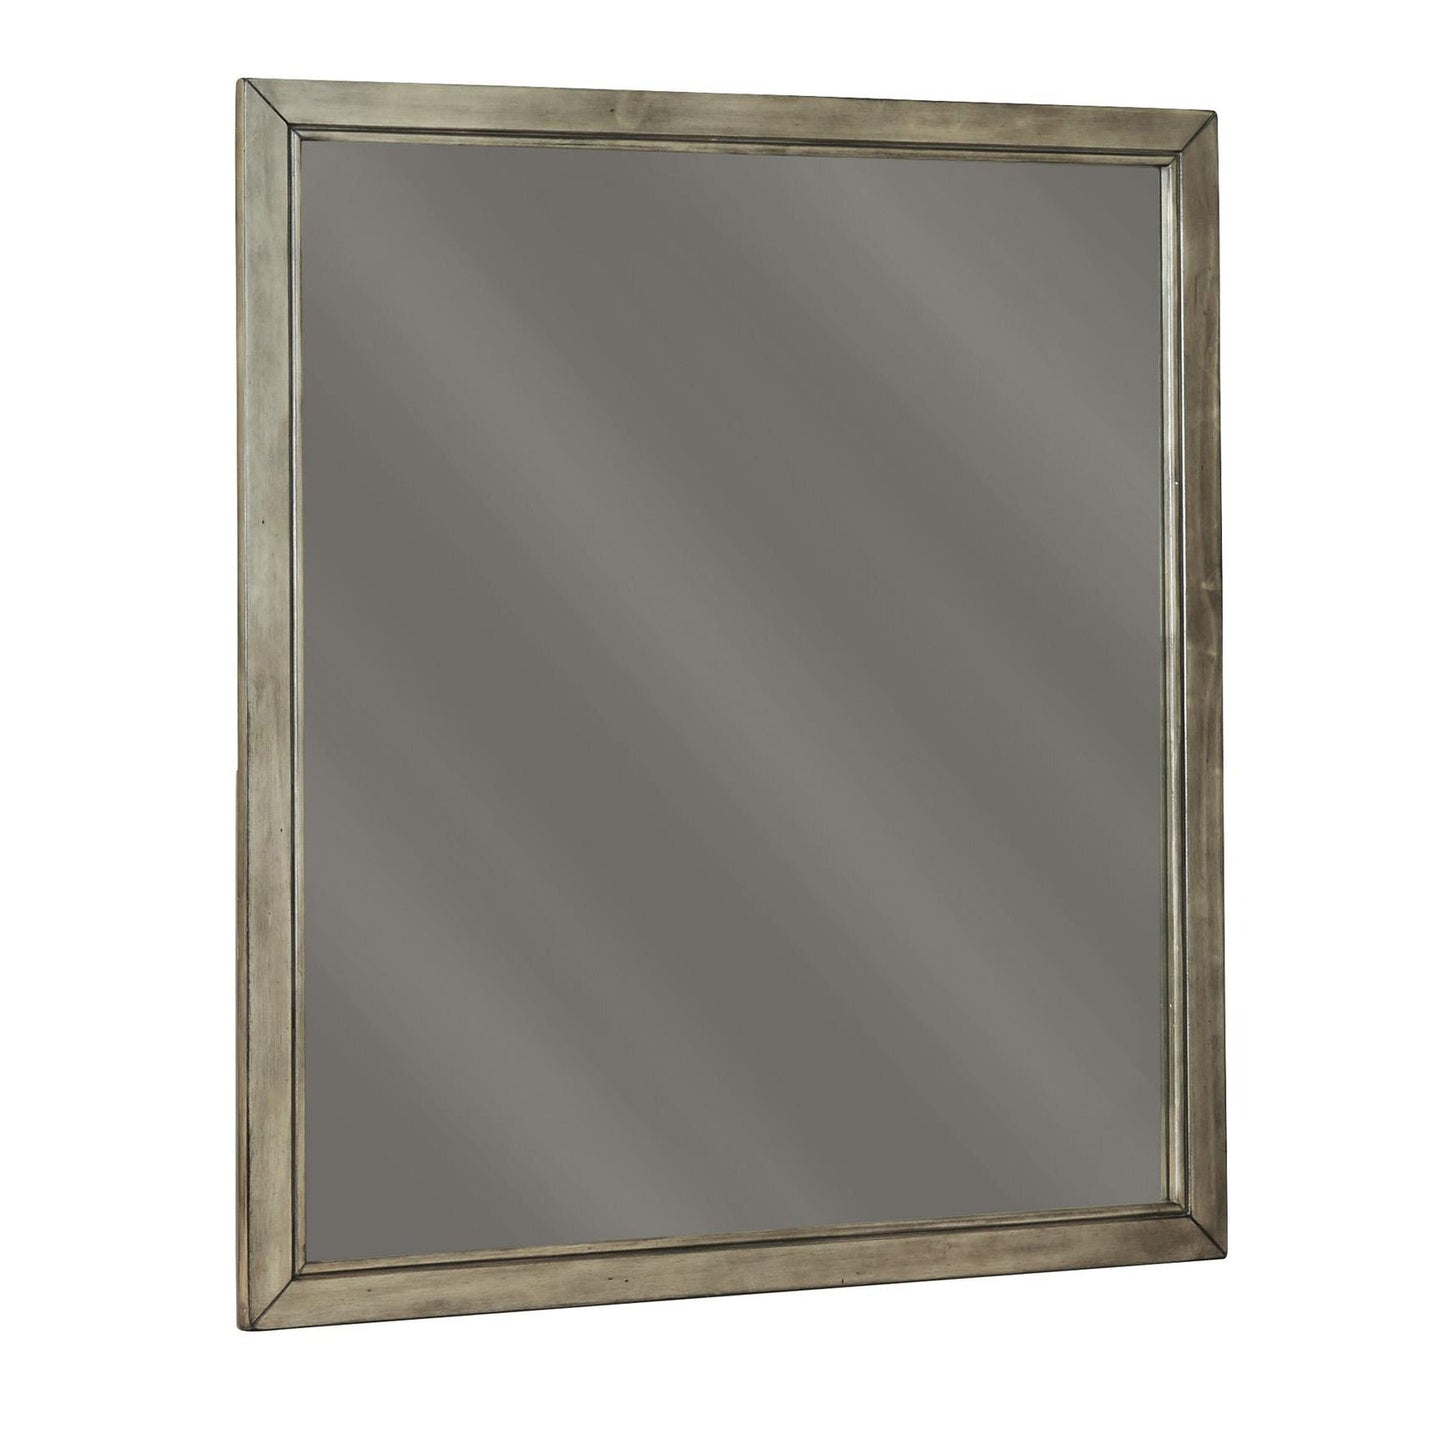 Benzara Gray Contemporary Style Rectangular Top Mirror